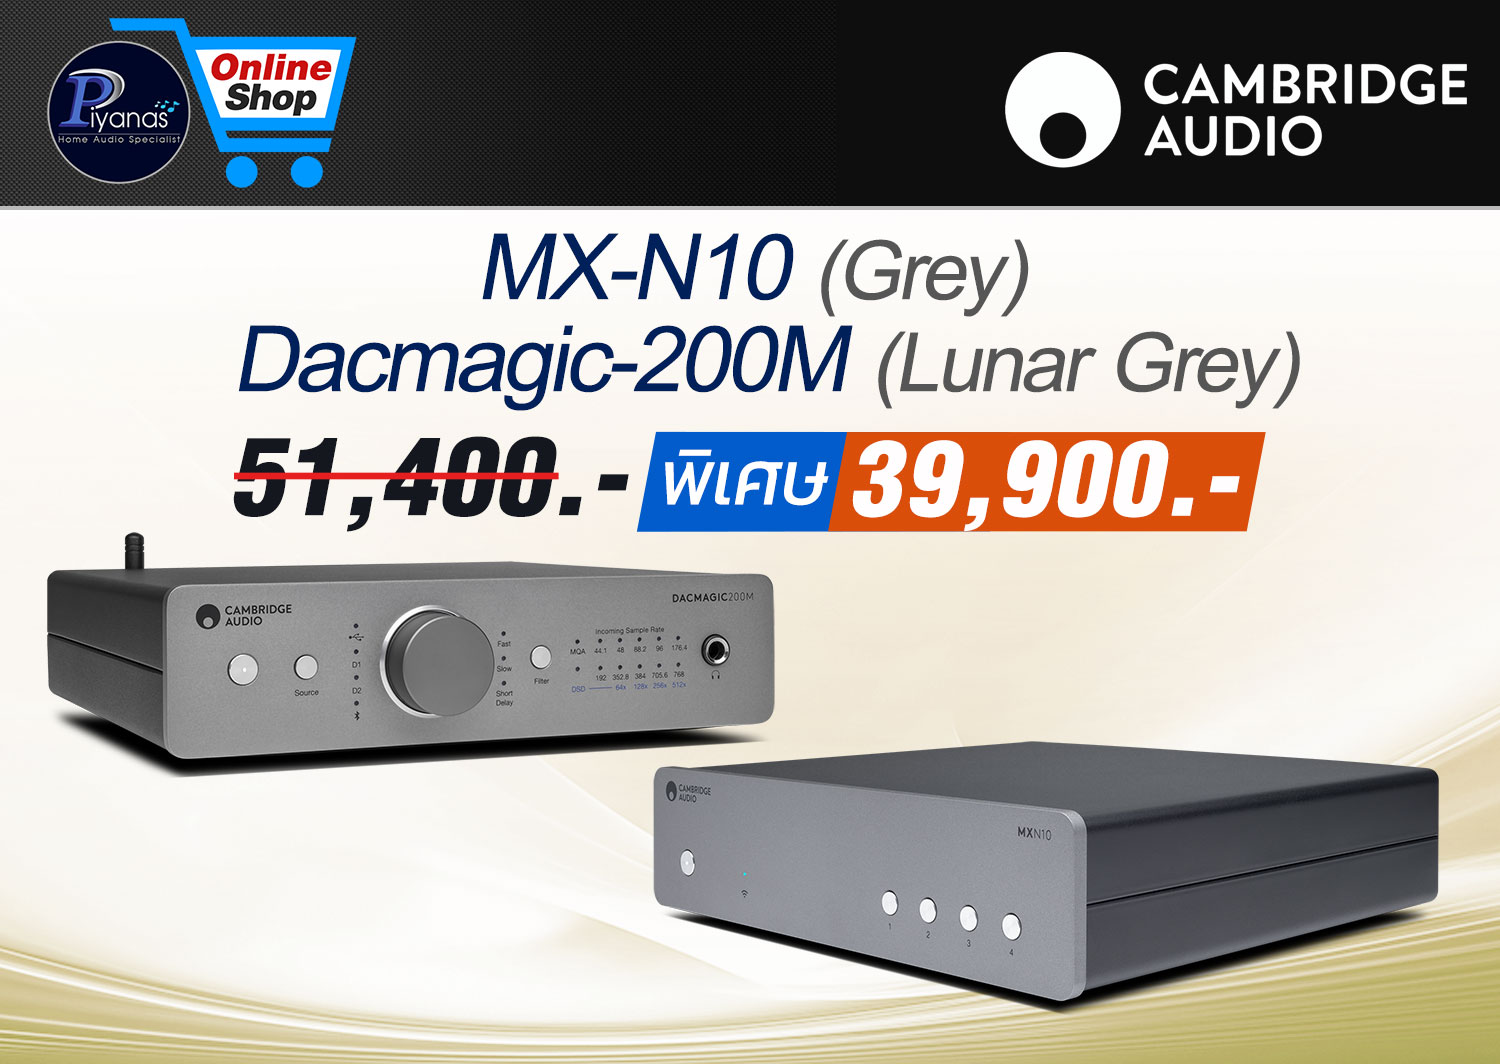 MX-N10 (Grey) + 
Dacmagic-200M (Lunar Grey)